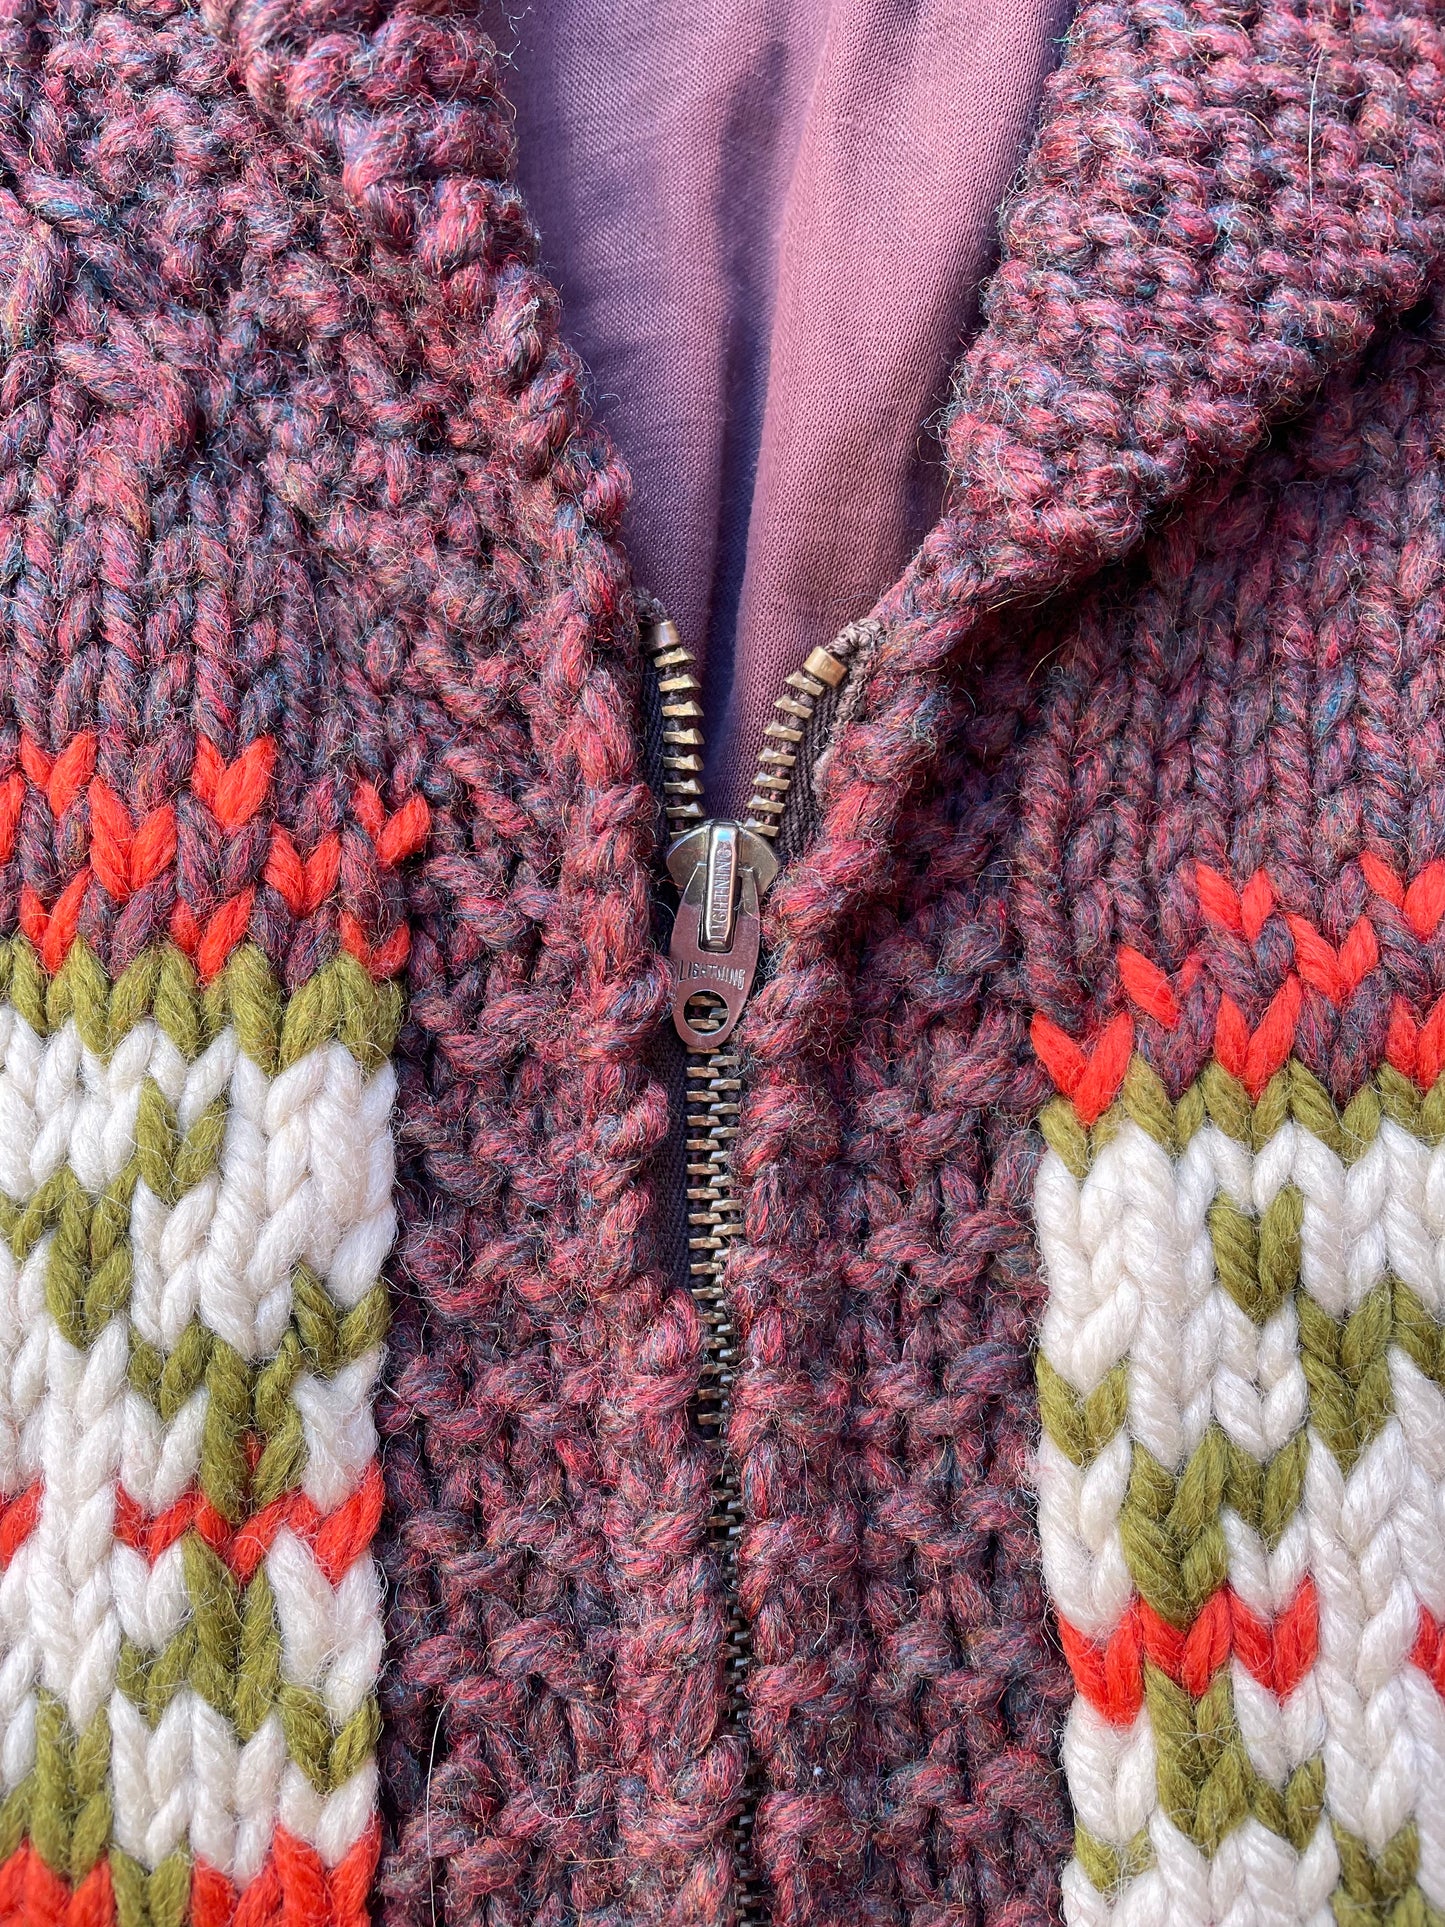 1960's Patterned Cowichan Knit Sweater - L